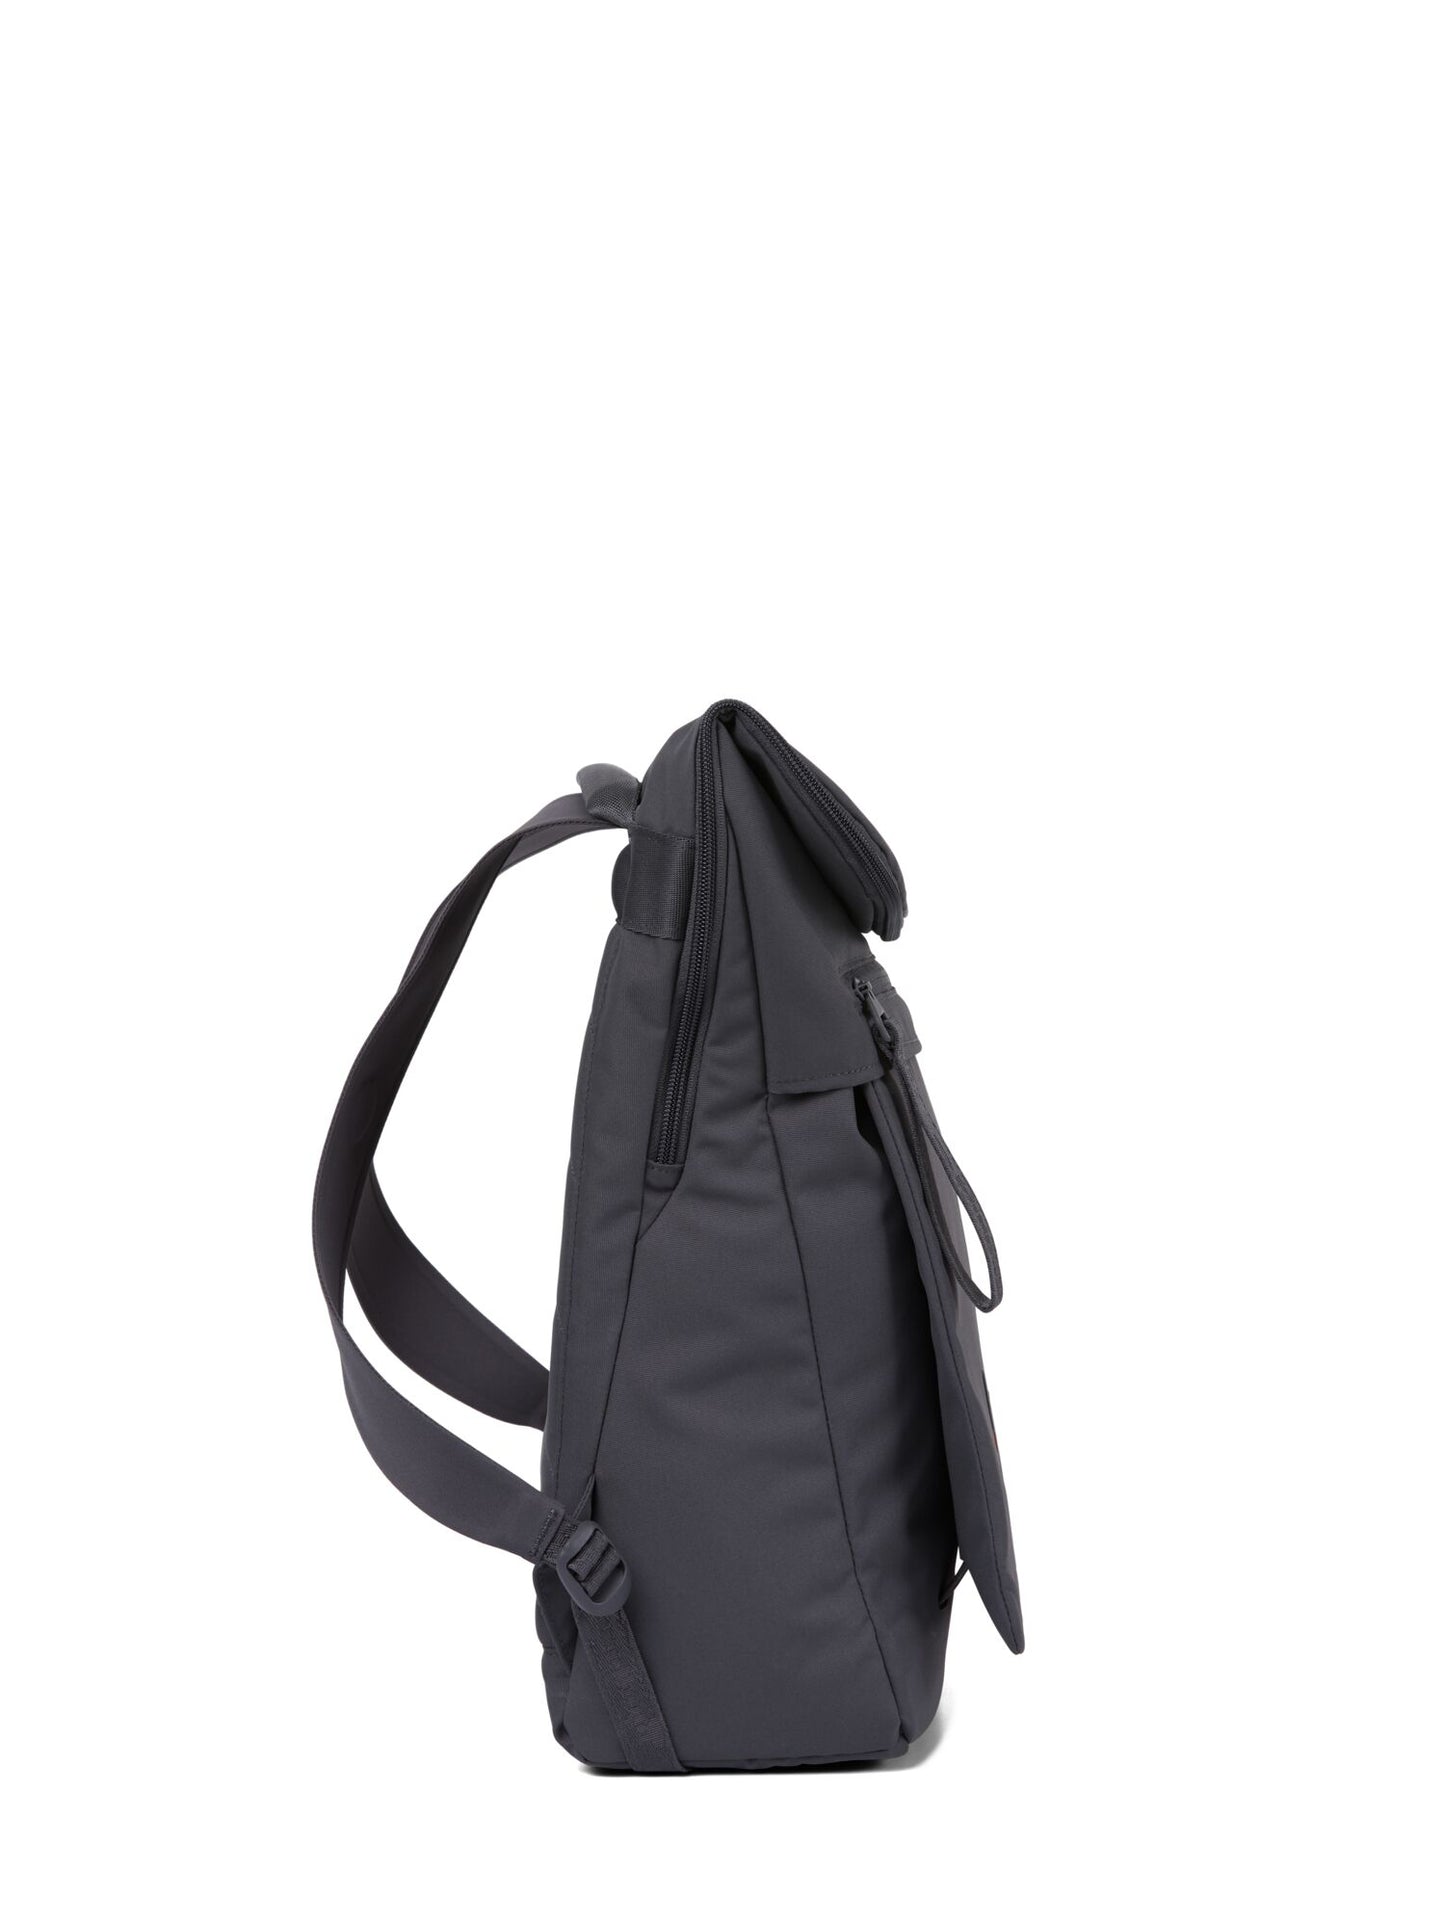 pinqponq-backpack-Klak-Deep-Anthra-side